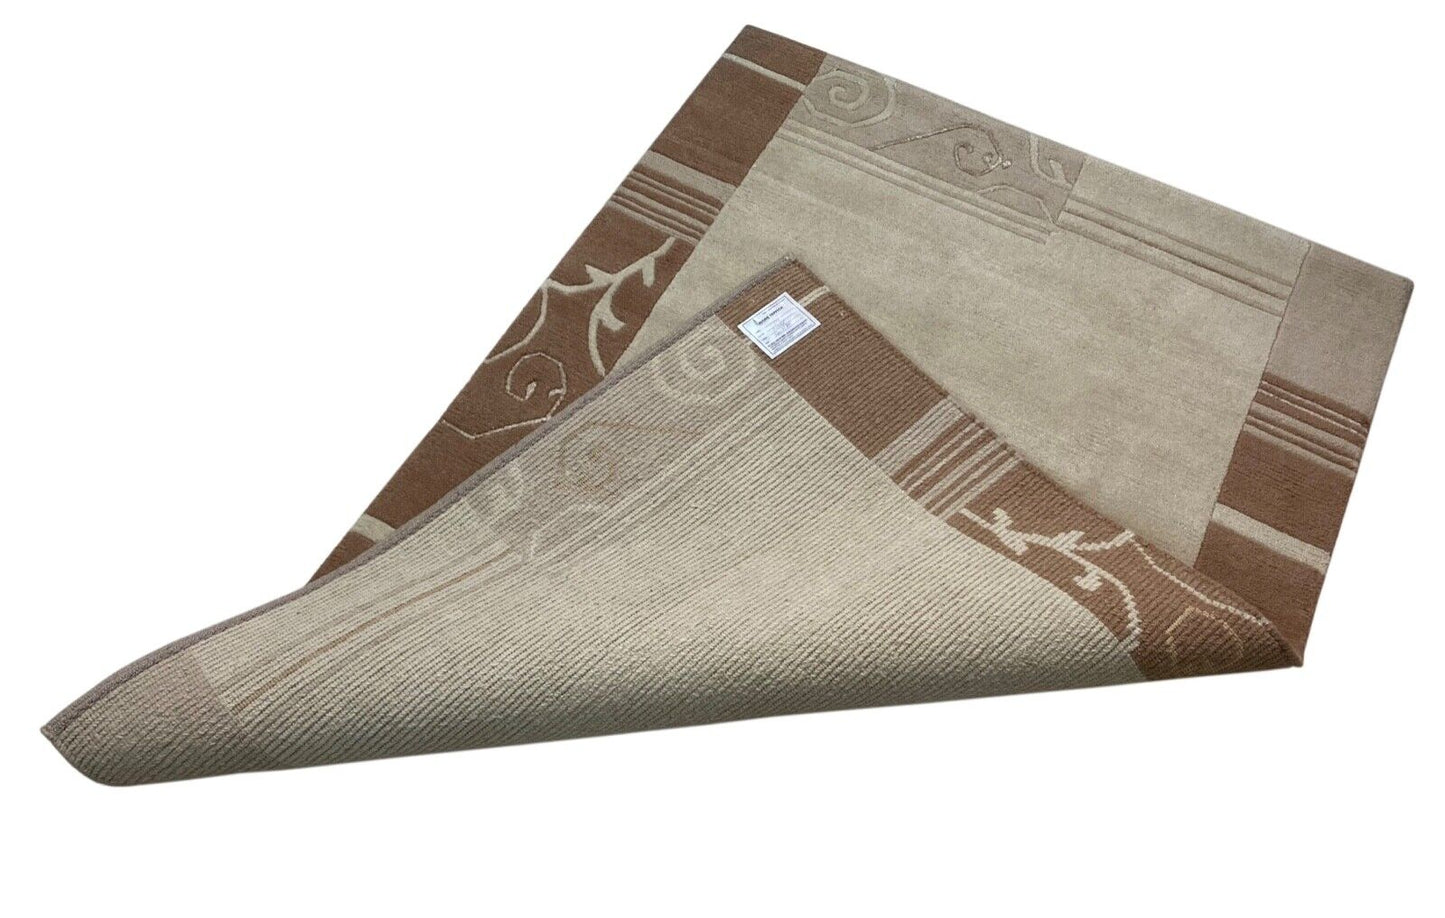 Indo Nepal Teppich Handgeknüpft Beige Braun 120X180 cm Wolle Orientteppich